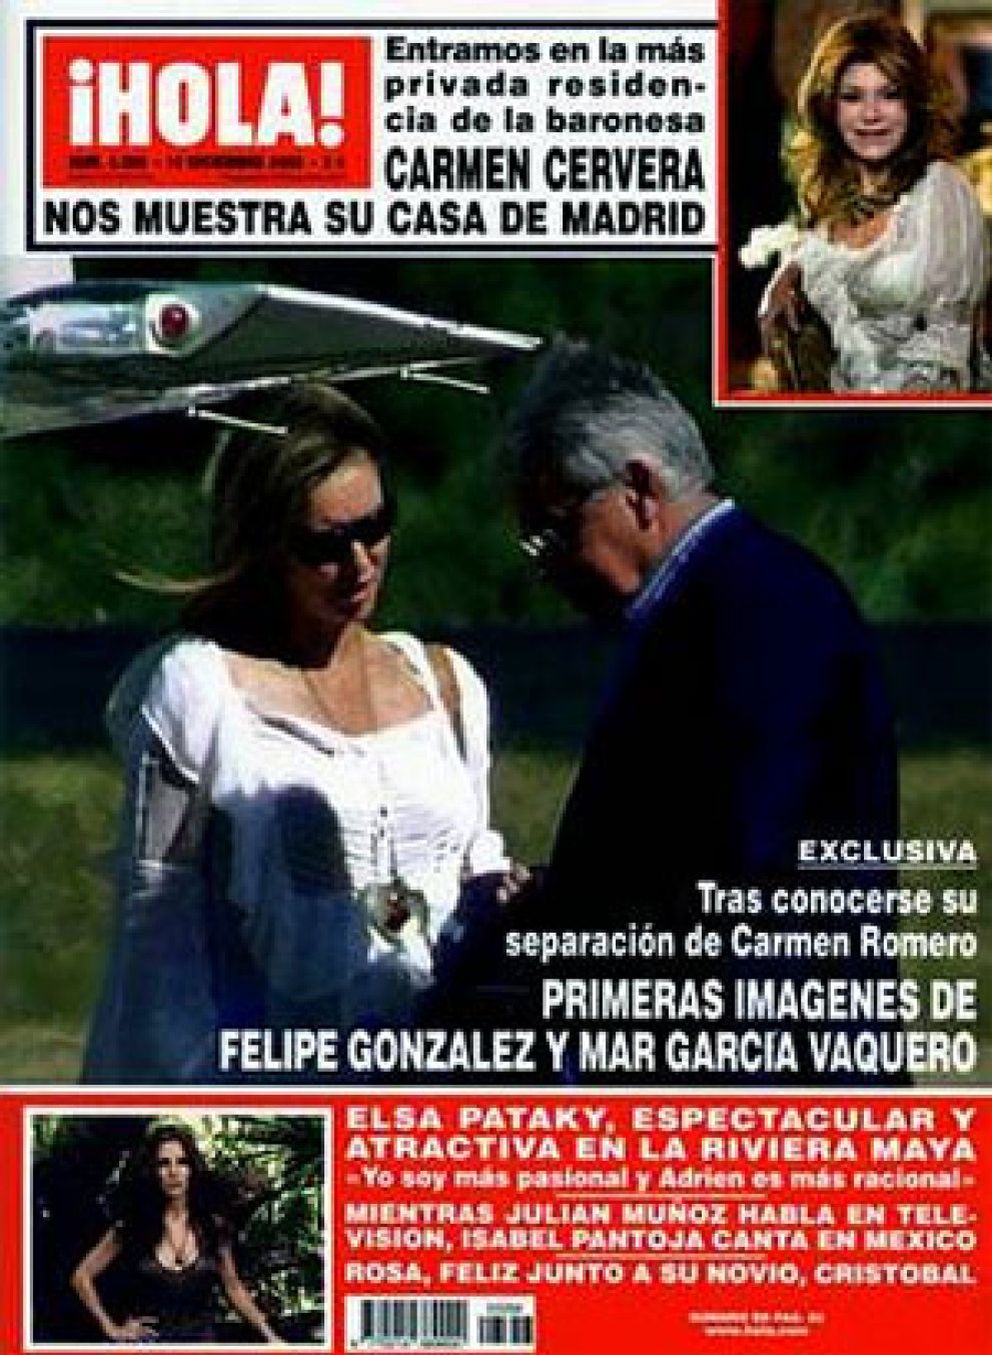 Foto: La princesa y la novia de González coinciden en gustos